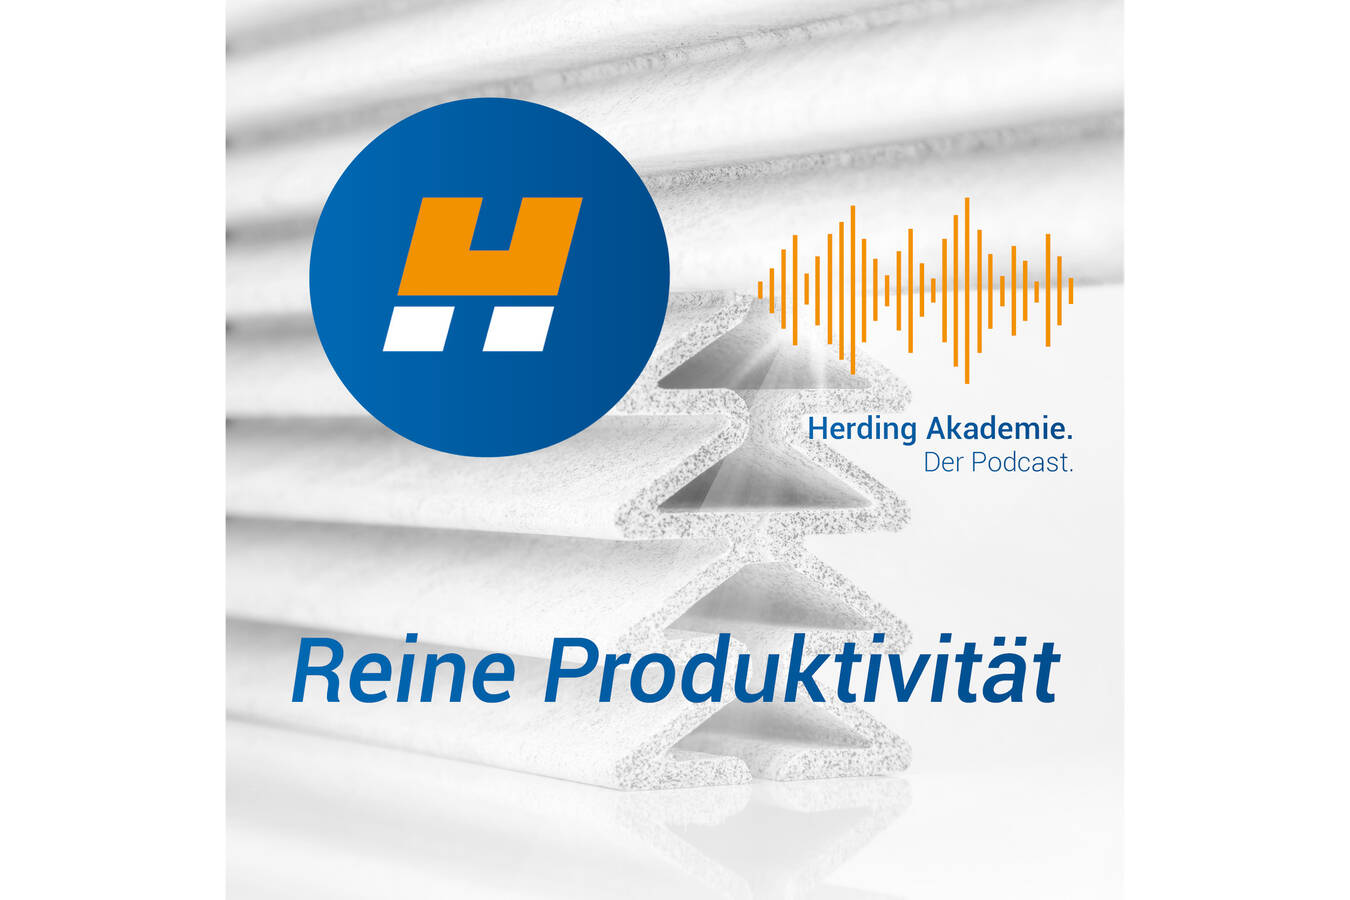 „Reine Produktivität“, der neue Podcast der Herding Akademie Mit dem Podcast „Reine Produktivität“ startet Herding eine Reise durch die Welt der Filtration und Sicherheitstechnik. Der Podcast erscheint wöchentlich auf allen gängigen Plattformen.